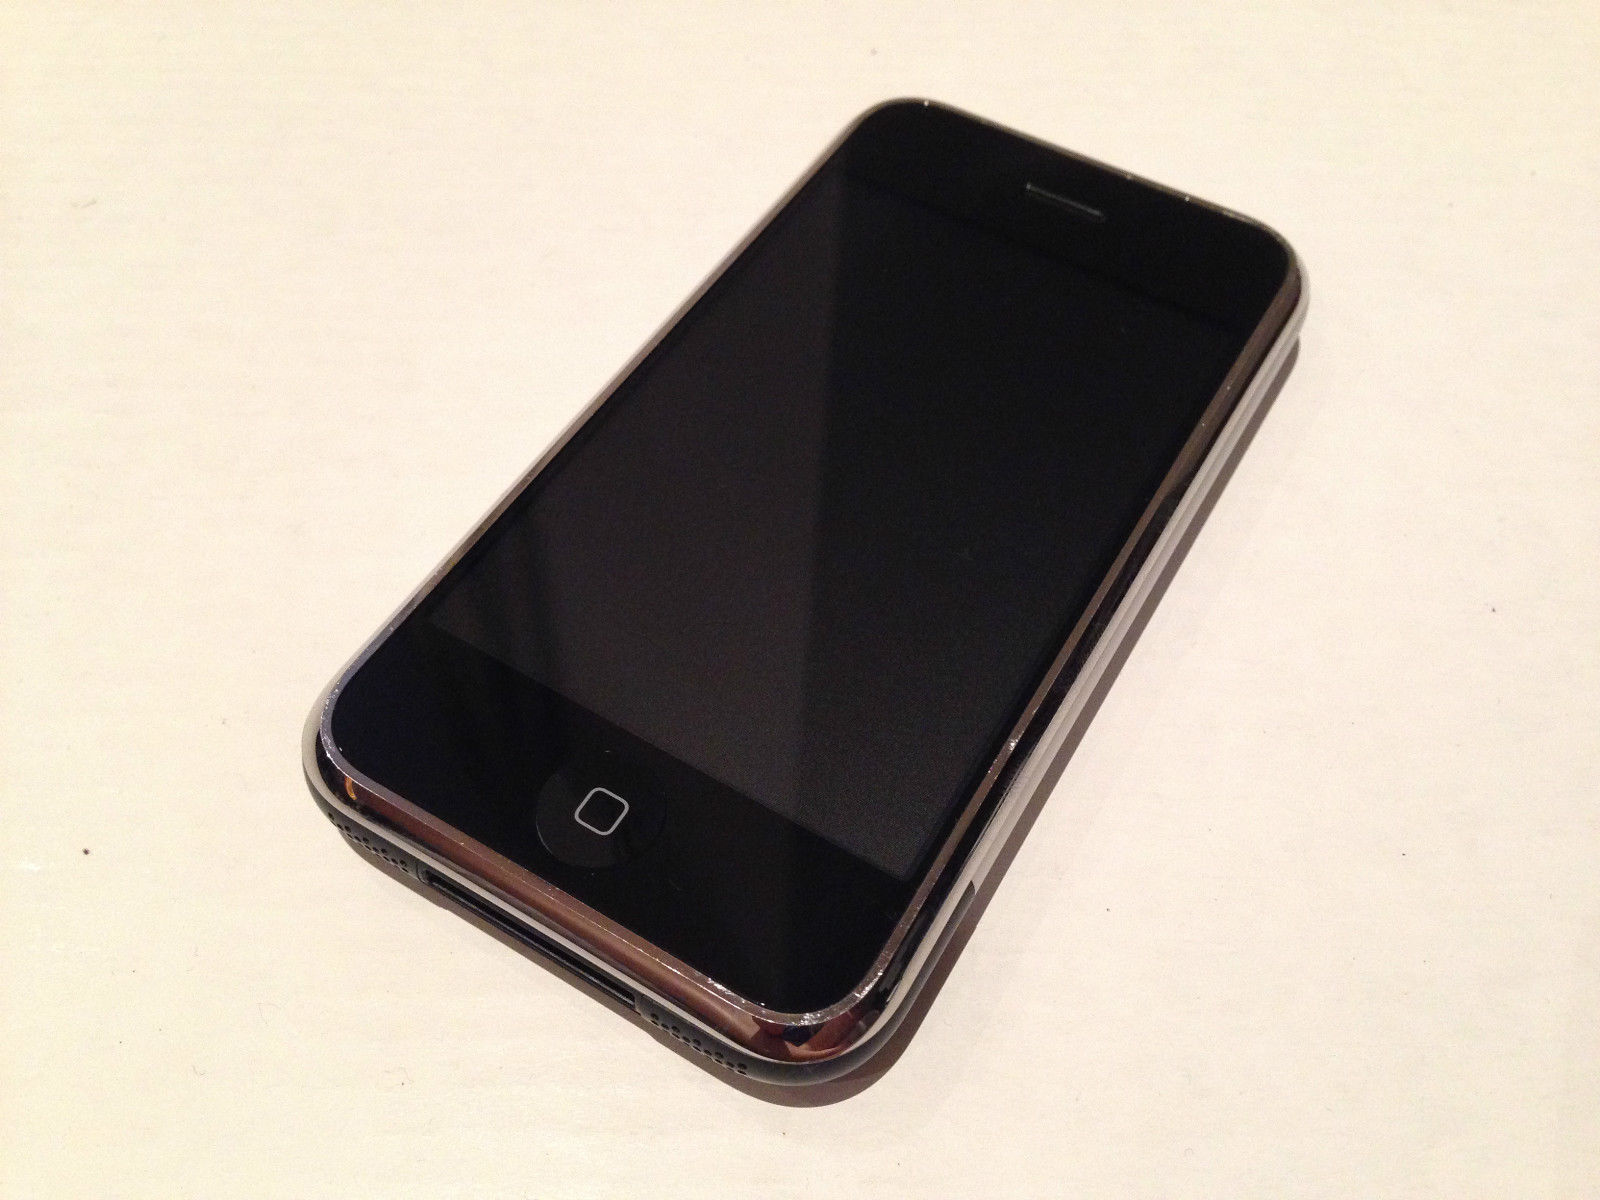 iPhone 1st gen prototype